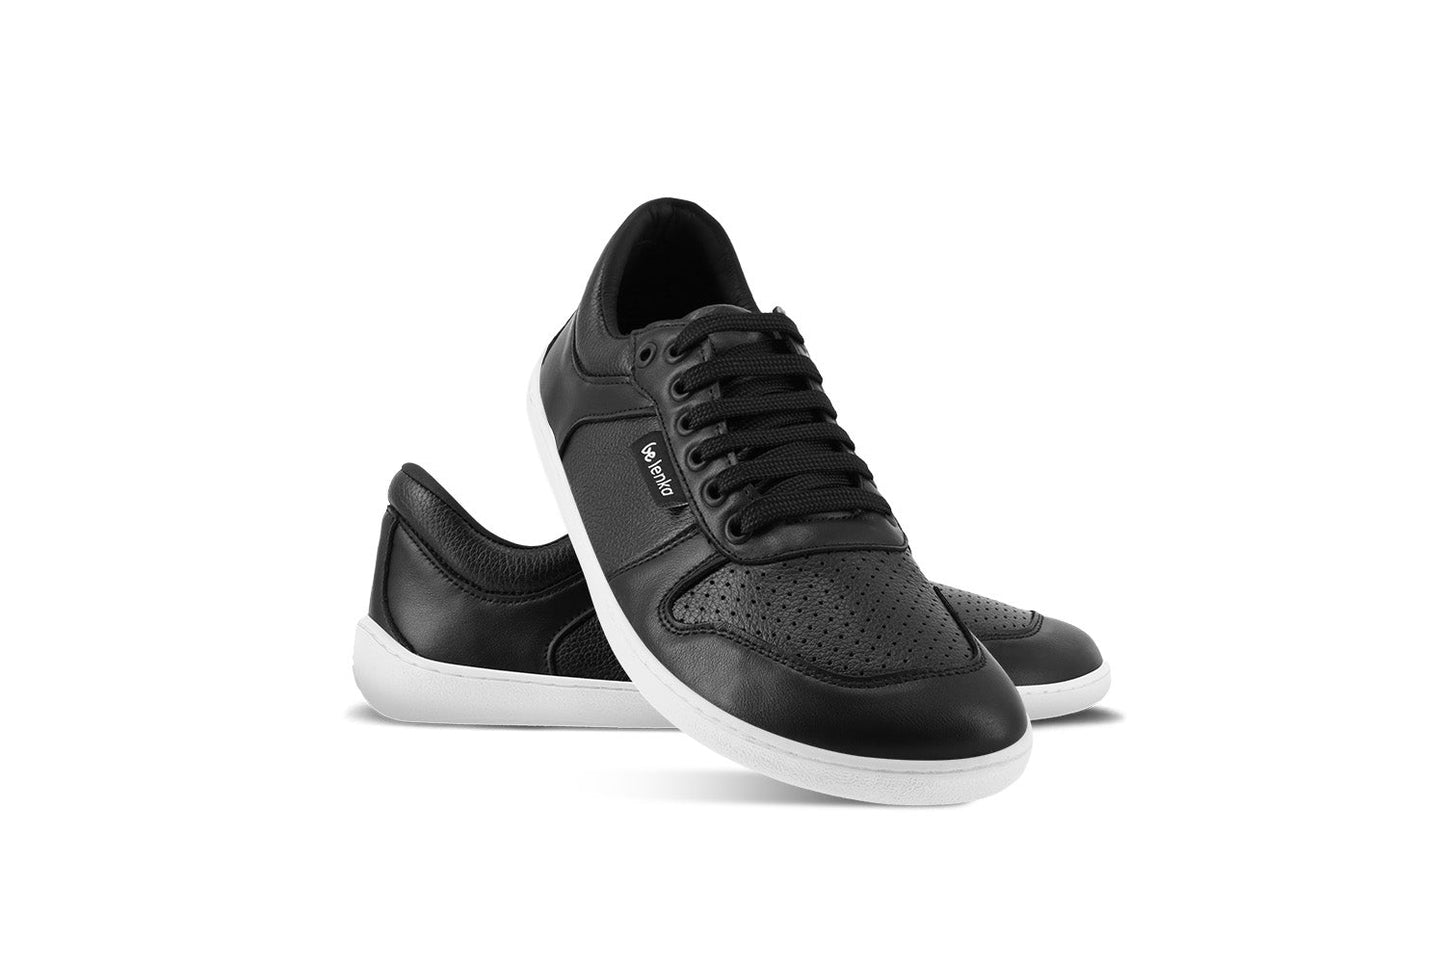 Barefoot Sneakers - Be Lenka Champ 3.0 - Black & White 2 OzBarefoot Australia